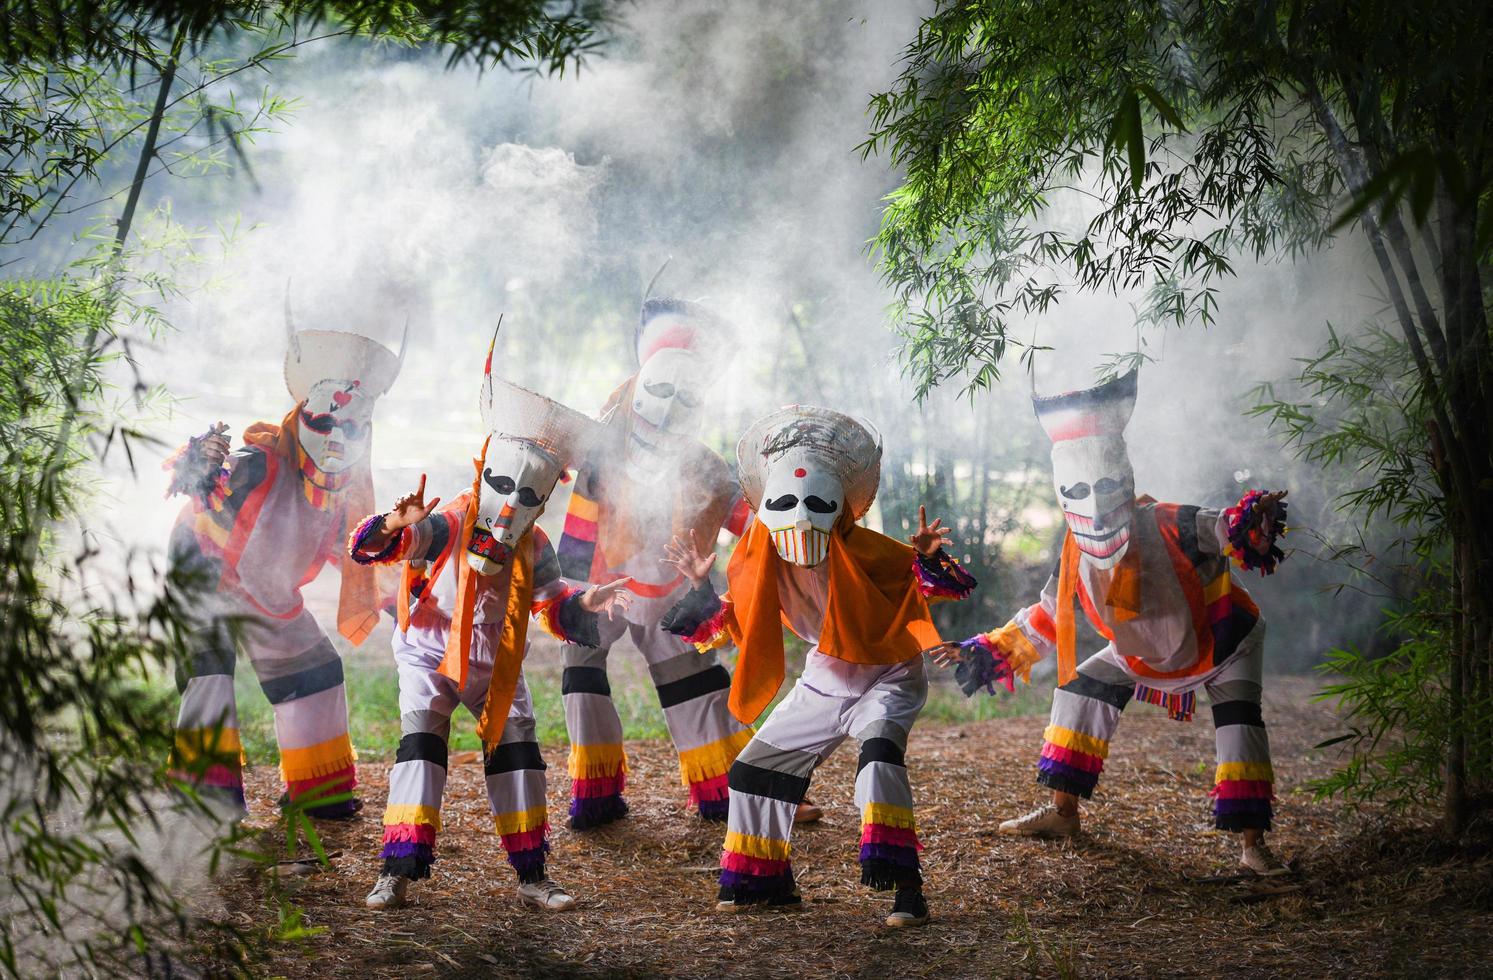 máscara fantasma do festival phi ta khon e traje colorido divertido máscara tradicional da tailândia o show arte e cultura província de loei dan sai tailândia festival - phi ta khon ou halloween da tailândia foto